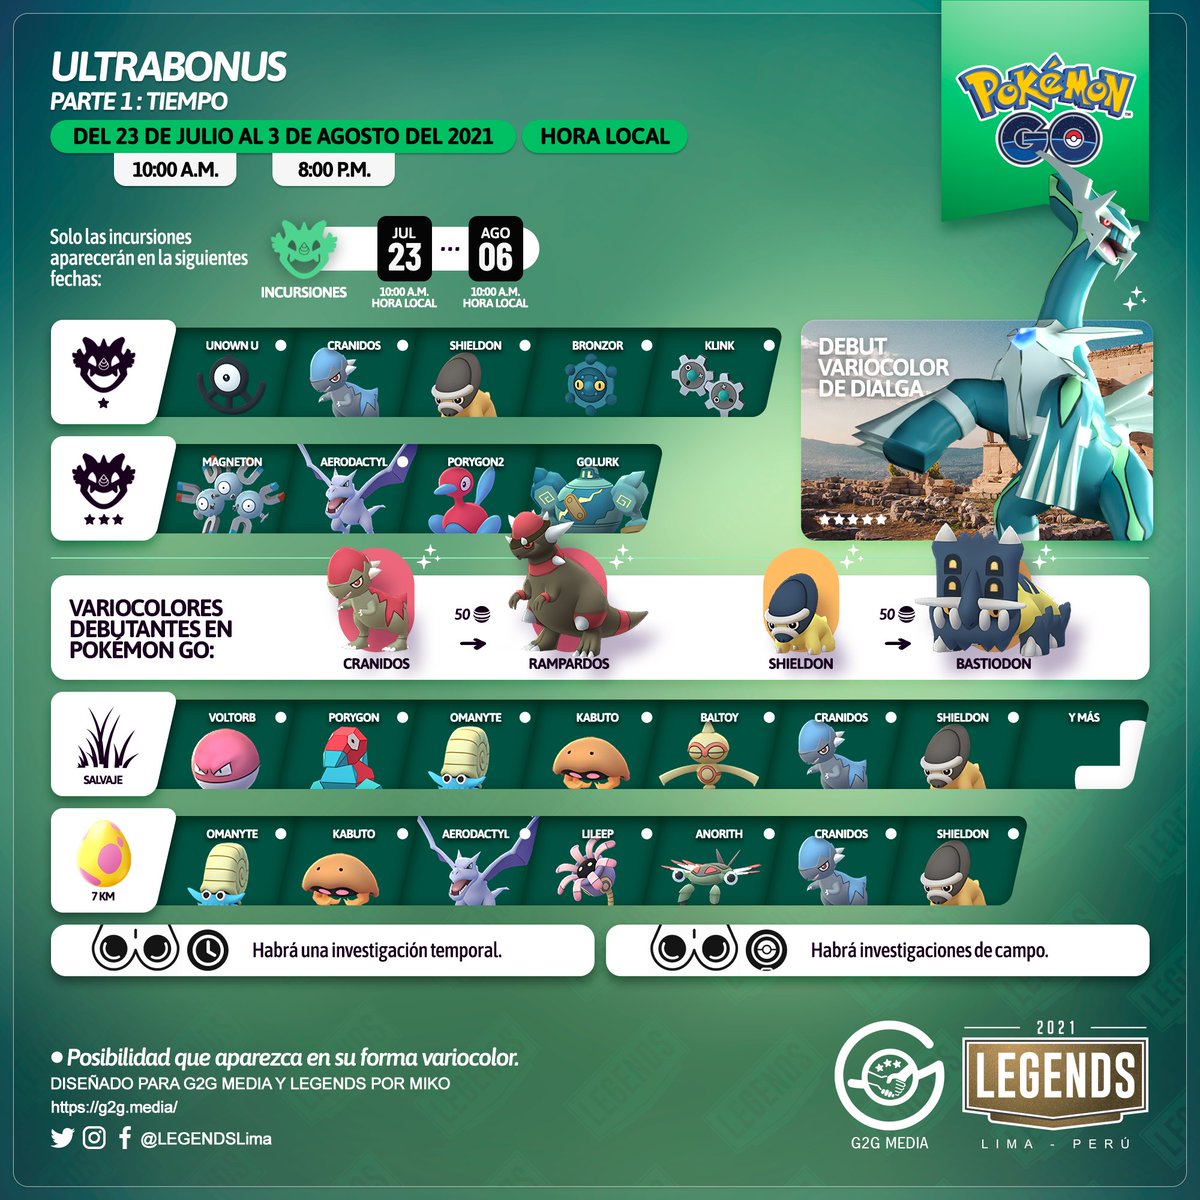 Pokestgo on X: La Tercera parte del Ultra Bonus llega este viernes y  estará dedicada a la región de Galar de Pokémon Espada y Escudo. Conoce los  detalles en la infografía y